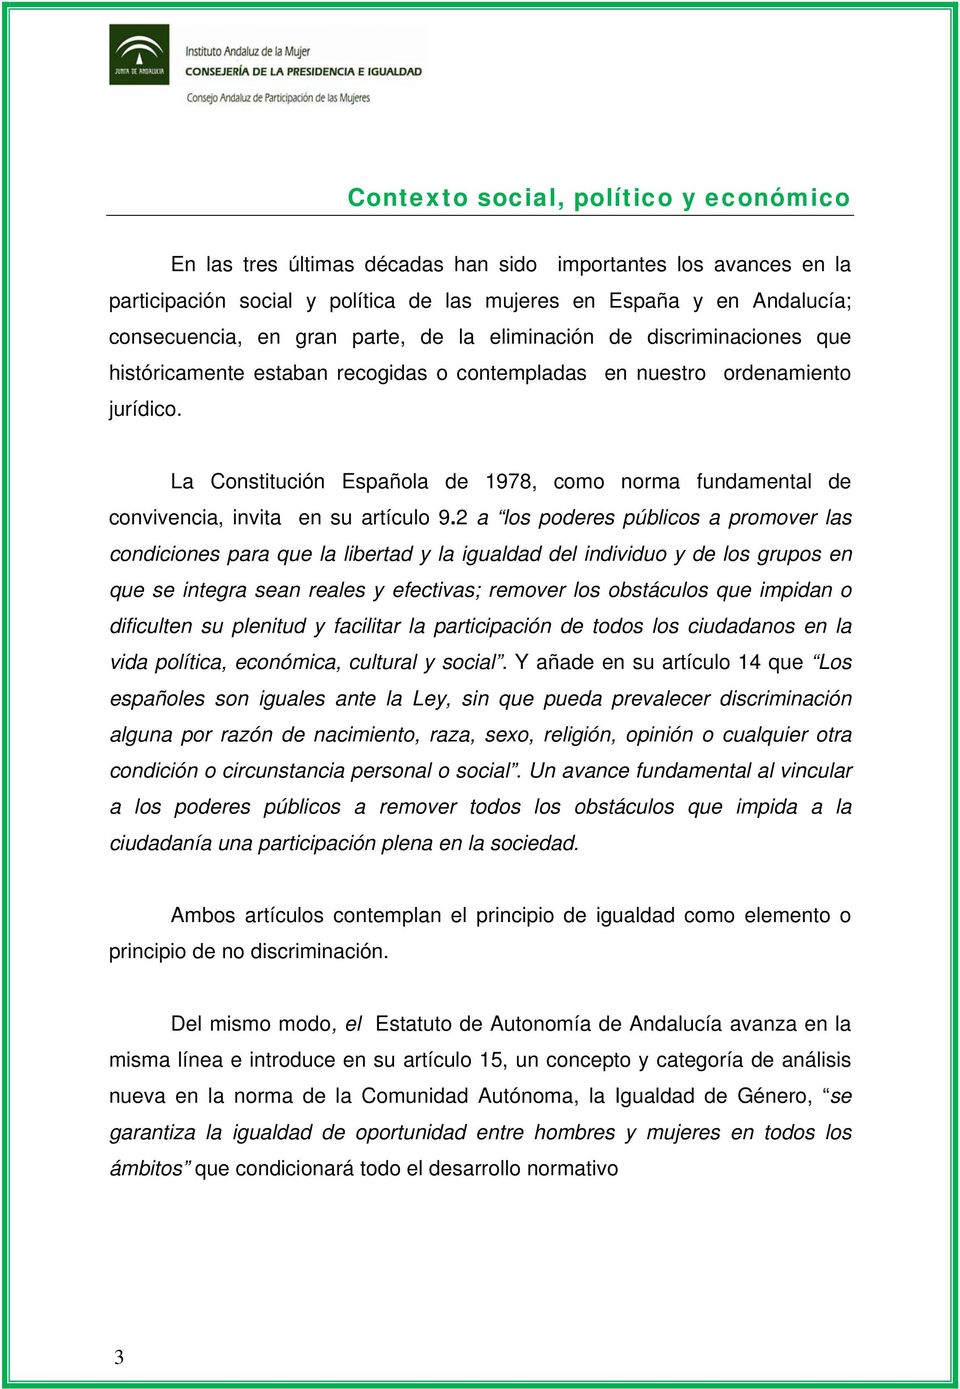 La Constitución Española de 1978, como norma fundamental de convivencia, invita en su artículo 9.